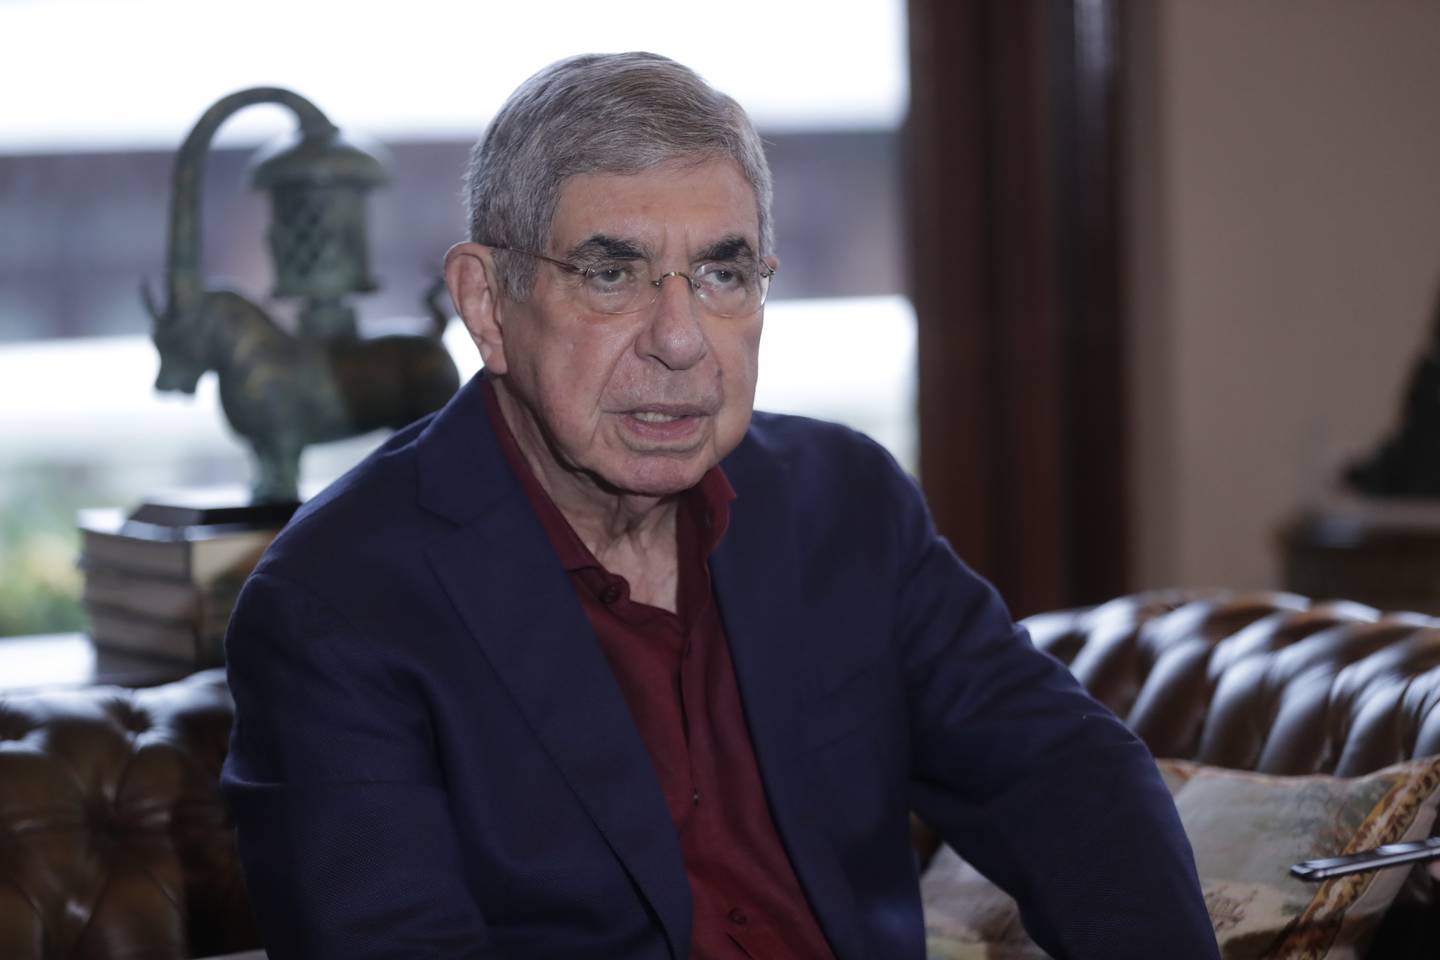 03/10/2019, San José, casa de Don Oscar Arias, conferencia de prensa por parte del ex presidente para hablar sobre el caso crucitas, donde no va a ser juzgado